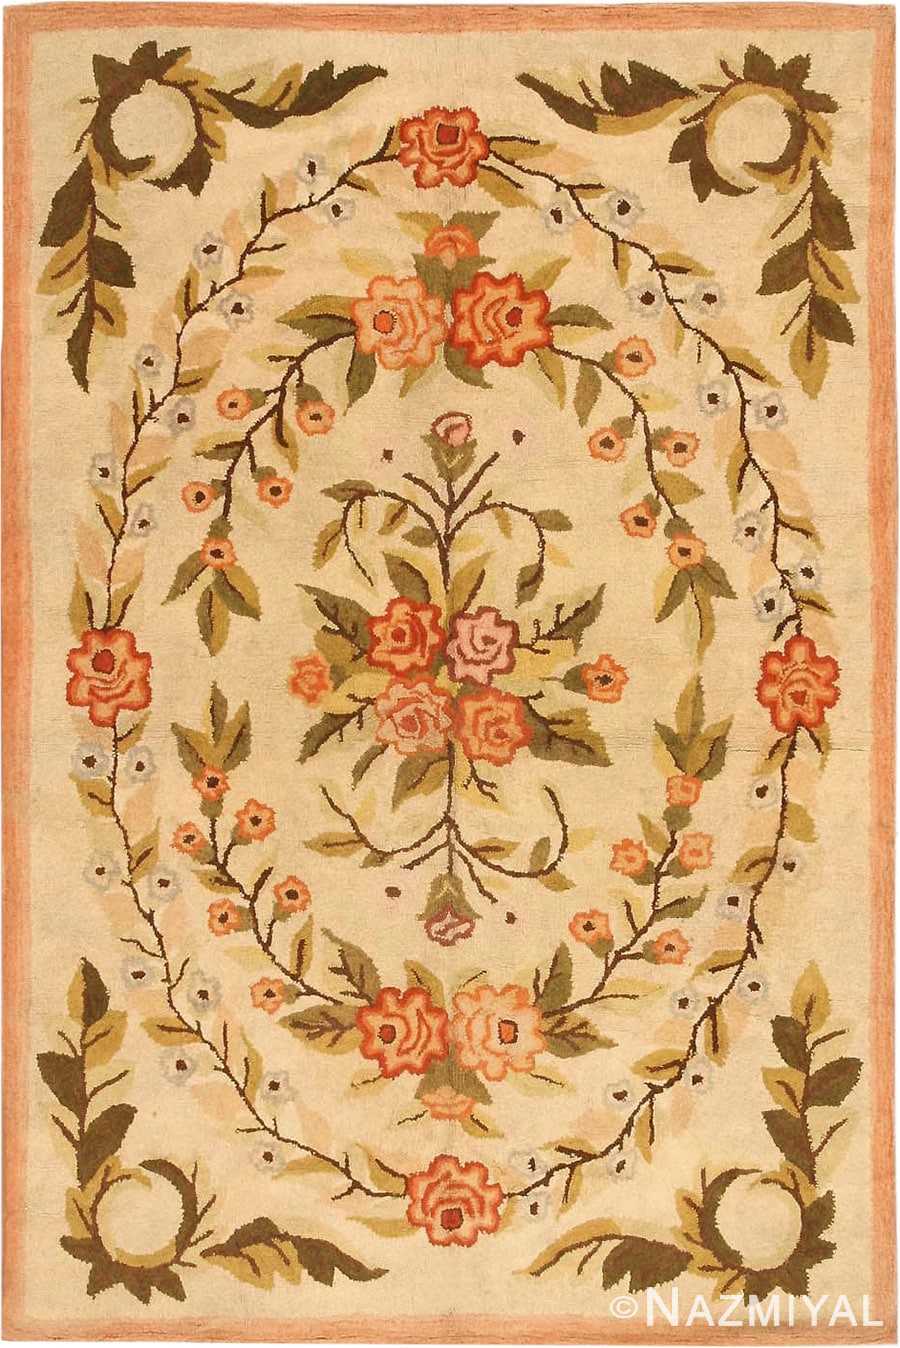 Vintage Floral Hooked Rug / Handmade Folk Art Rose Pattern Accent